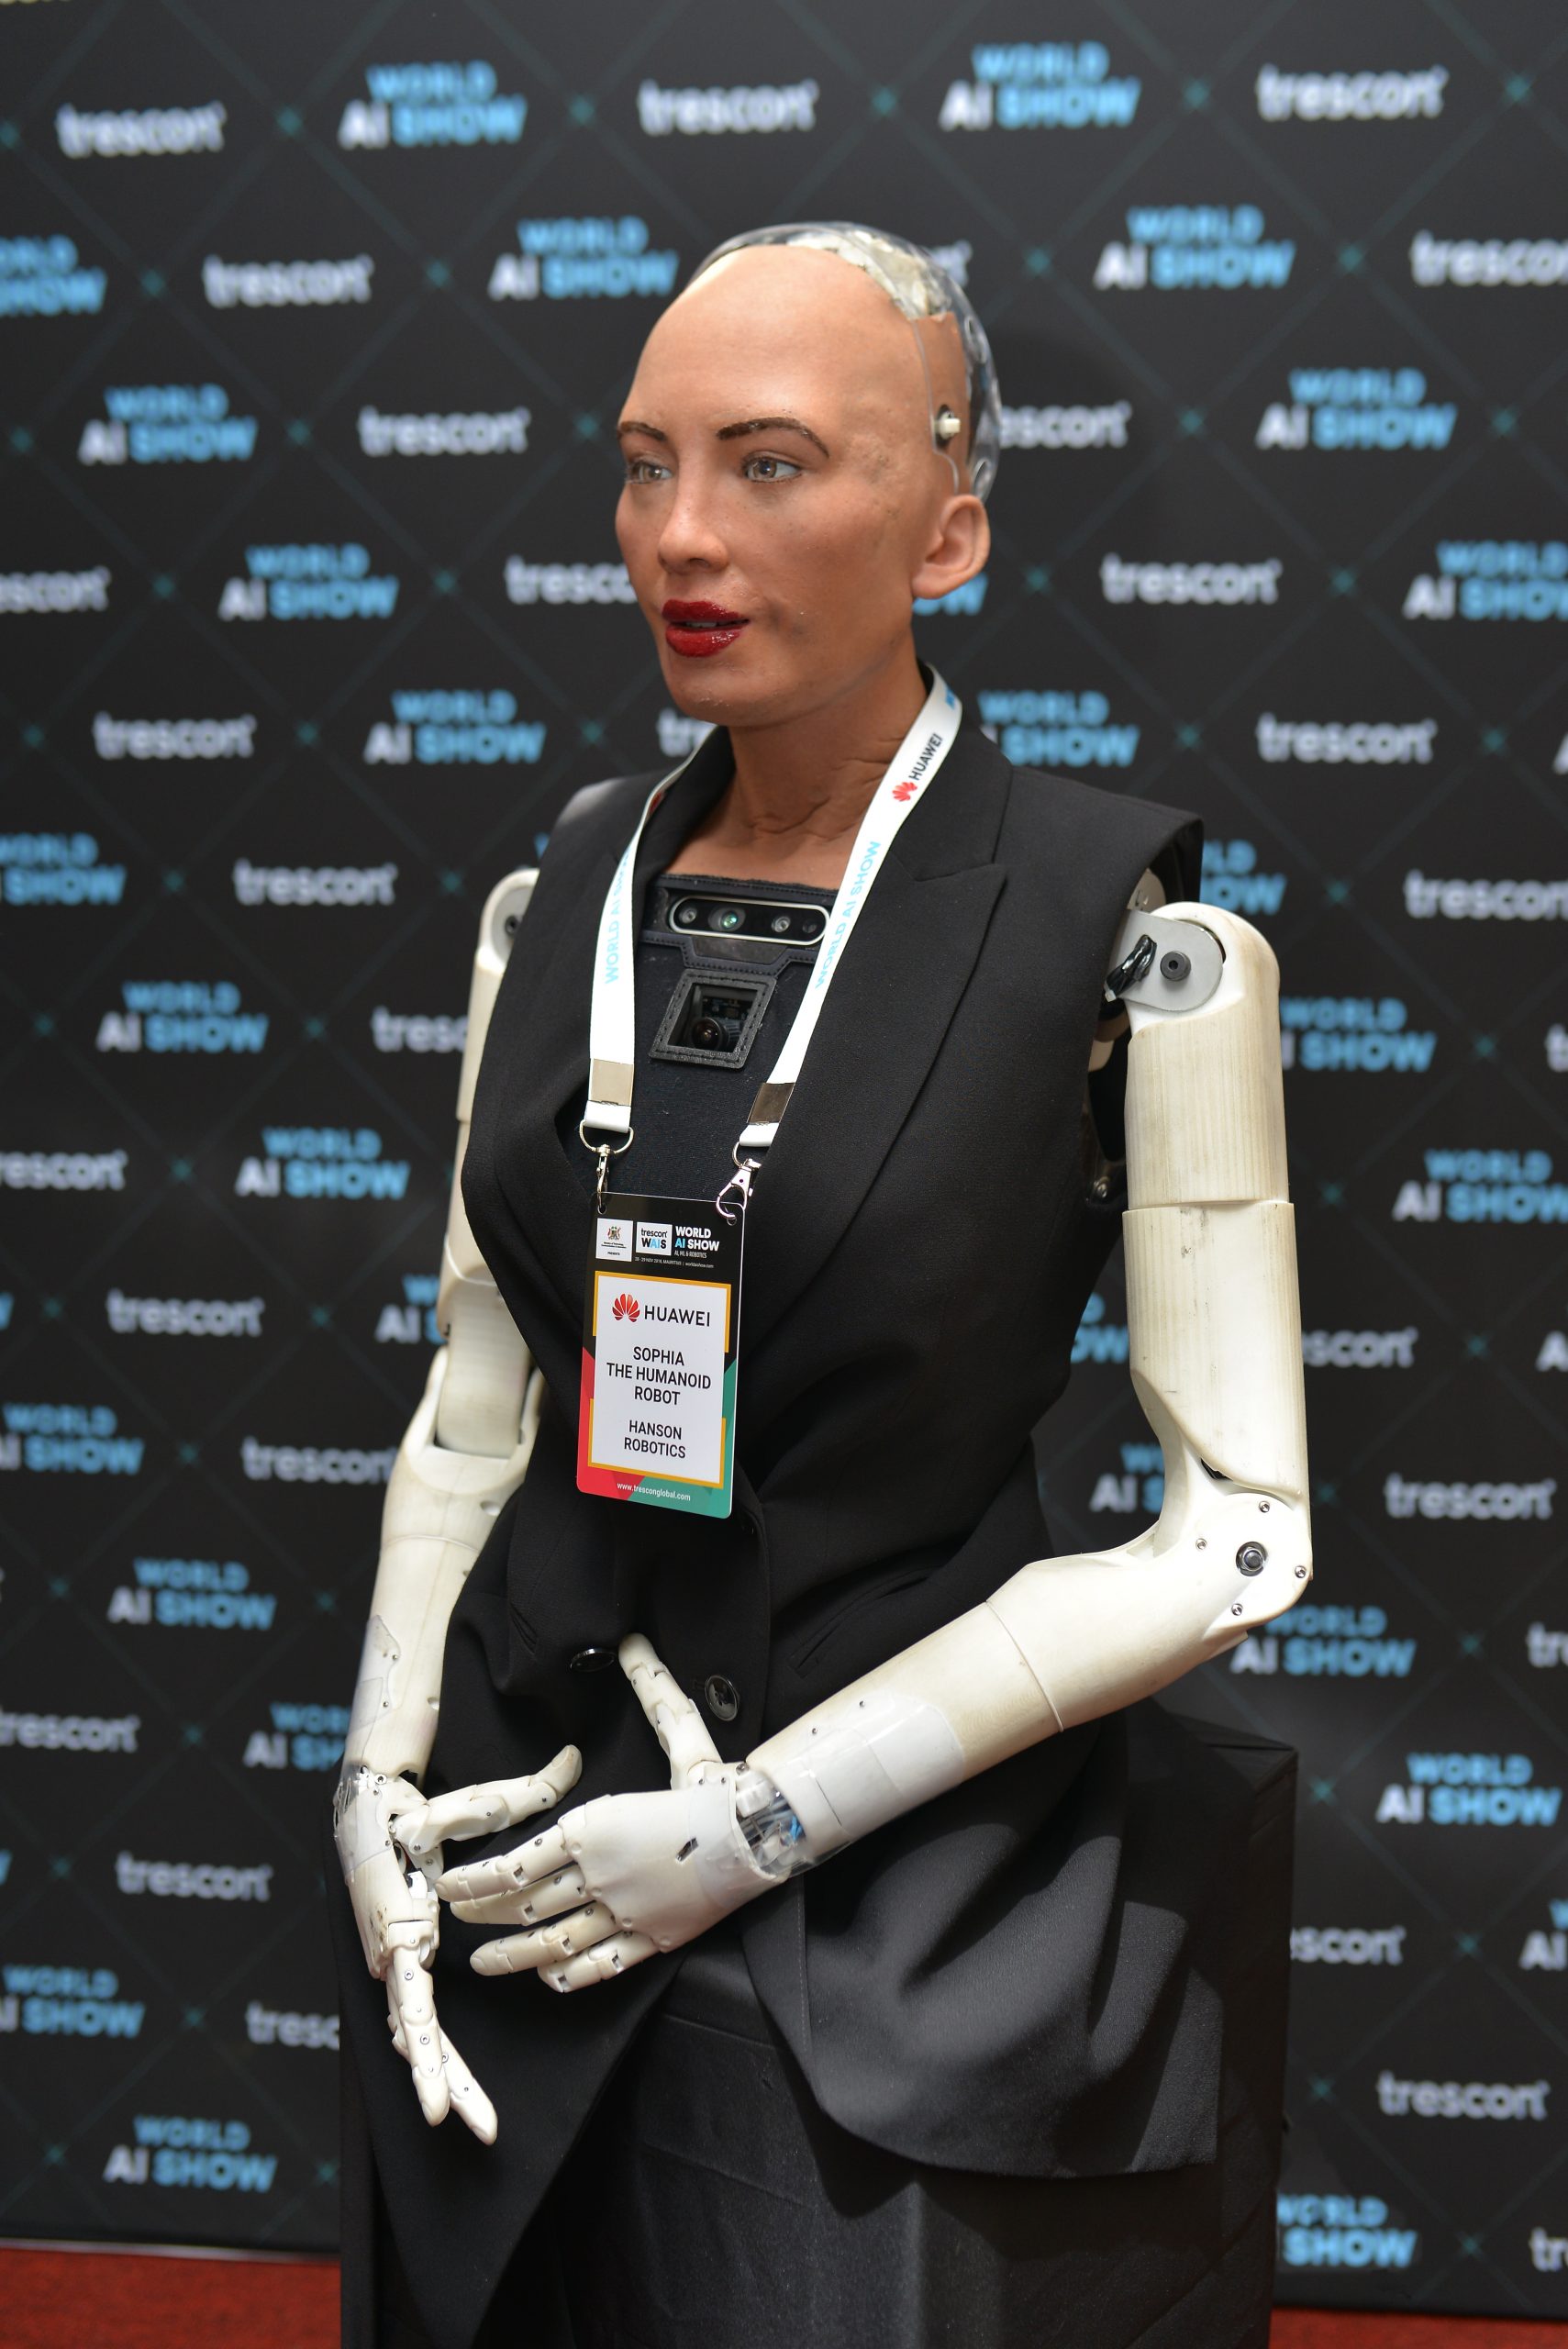 Sophia the humanoid robot is coming to Kenya